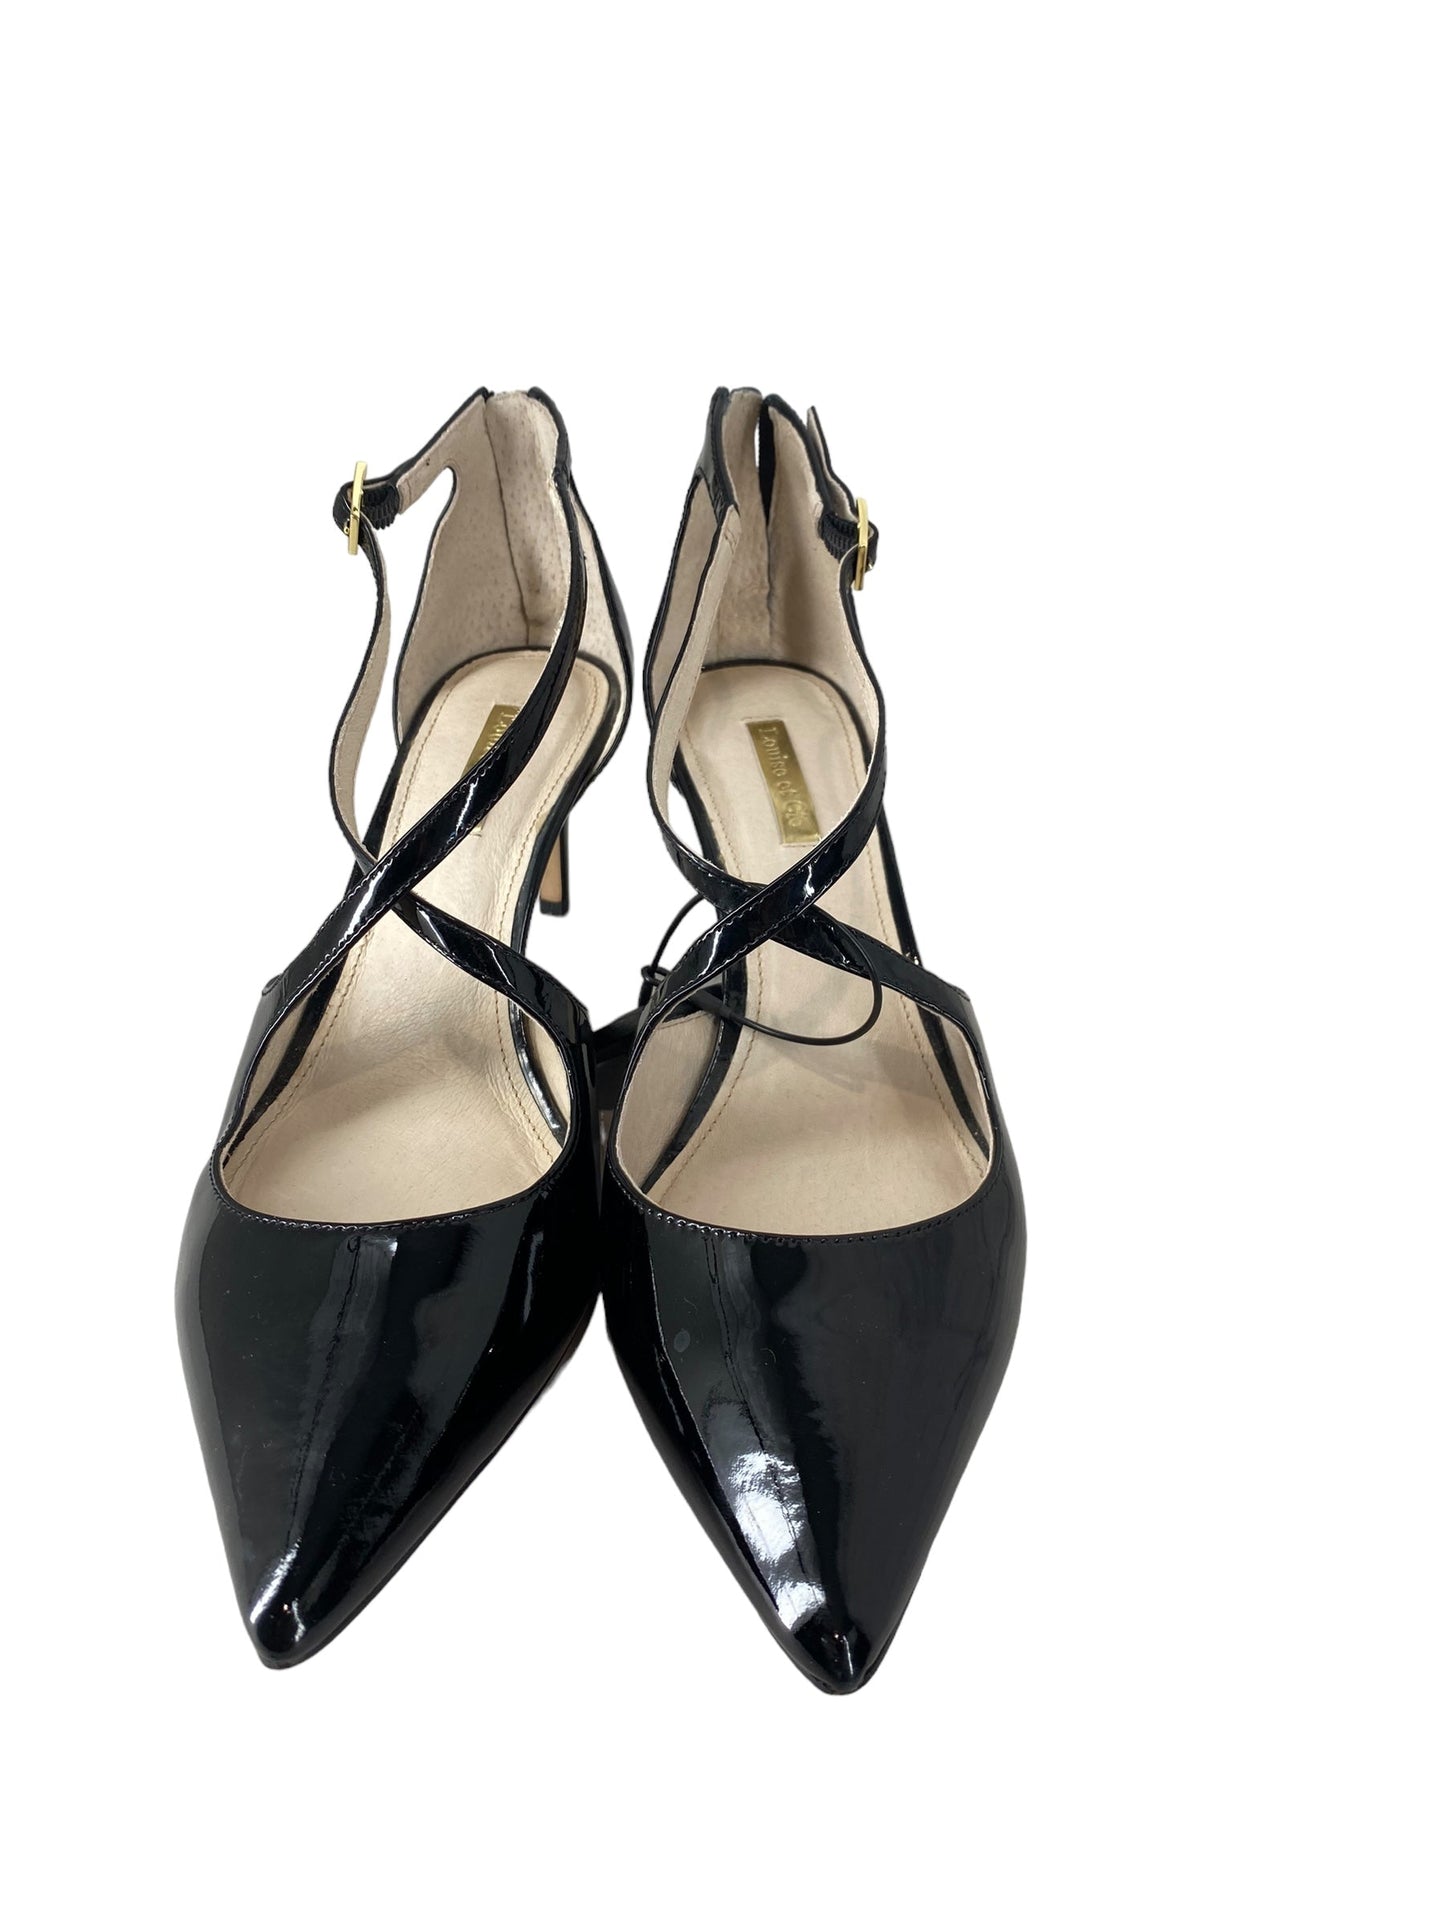 Black Shoes Heels Stiletto Louise Et Cie, Size 9.5